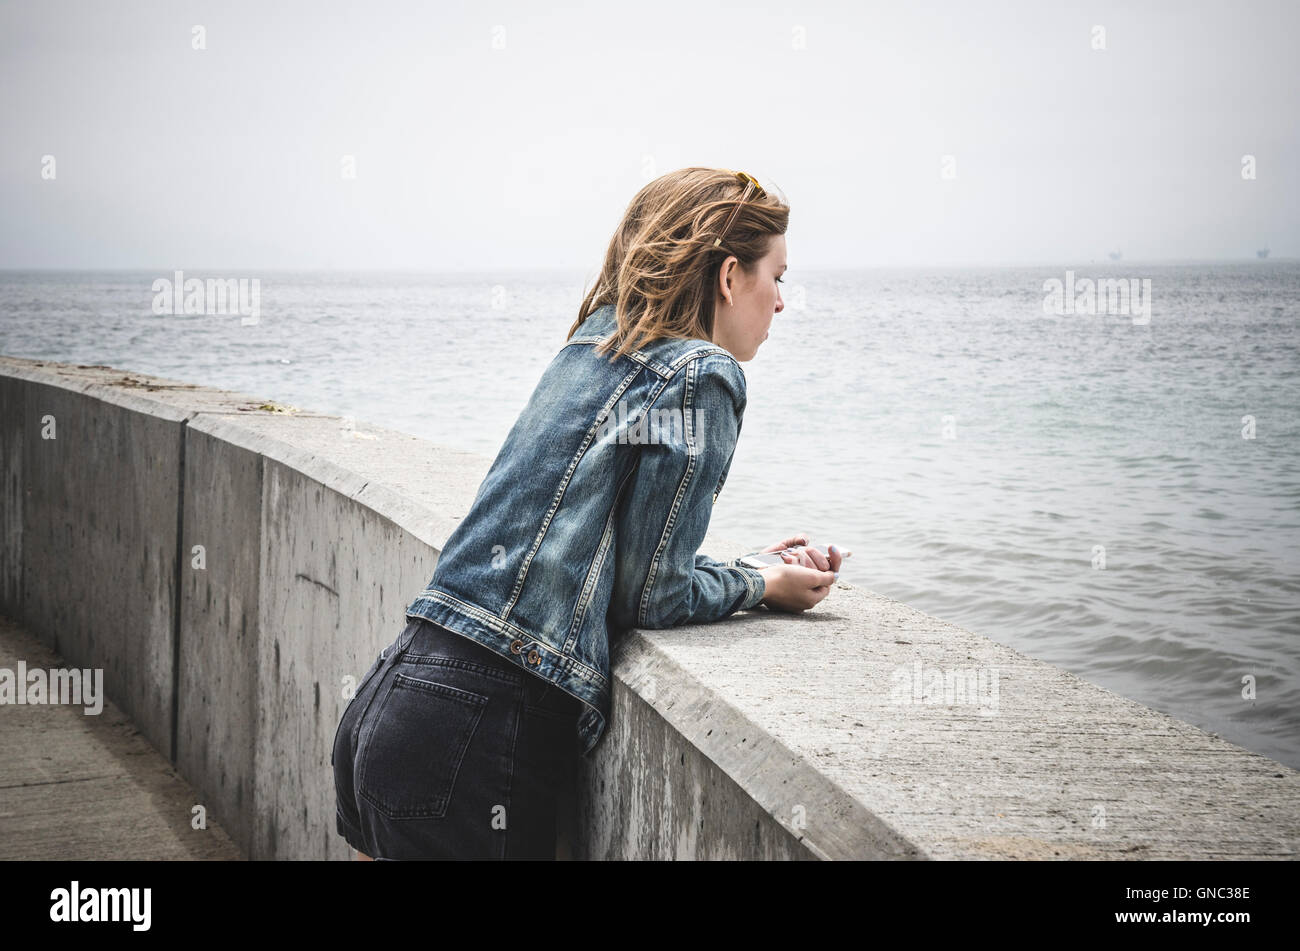 Junge Frau stützte sich auf Barriere, Santa Barbara Harbor, Kalifornien, USA Stockfoto